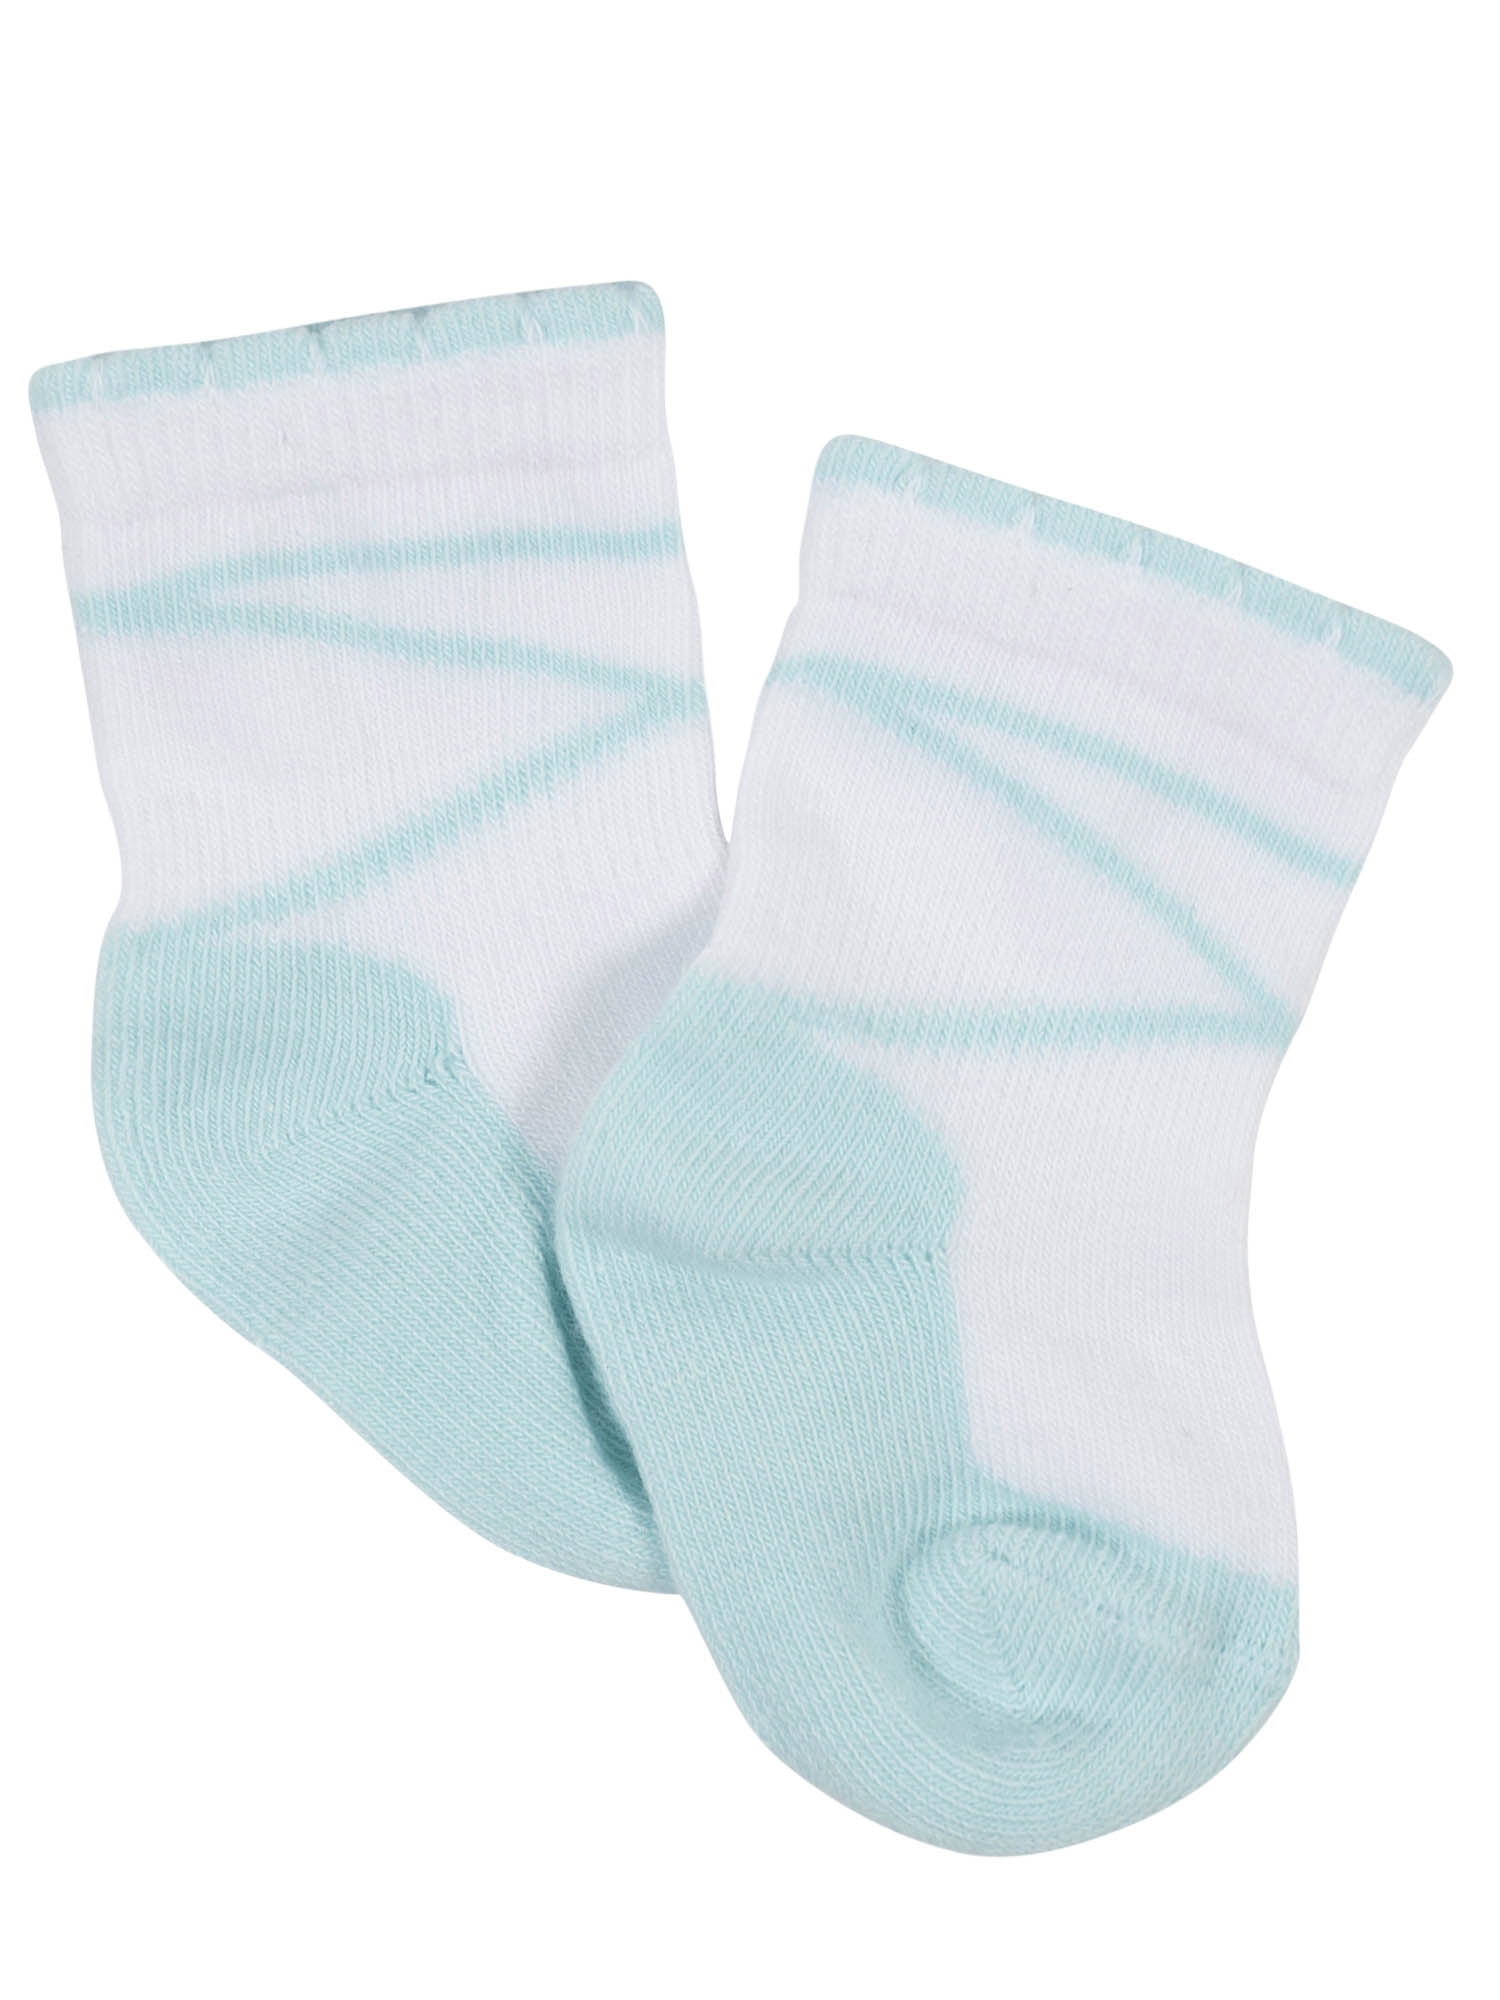 Ephemeral Kids Grip Socks - Pack of 4 (Colors & Design May Vary) (2-3 Years)